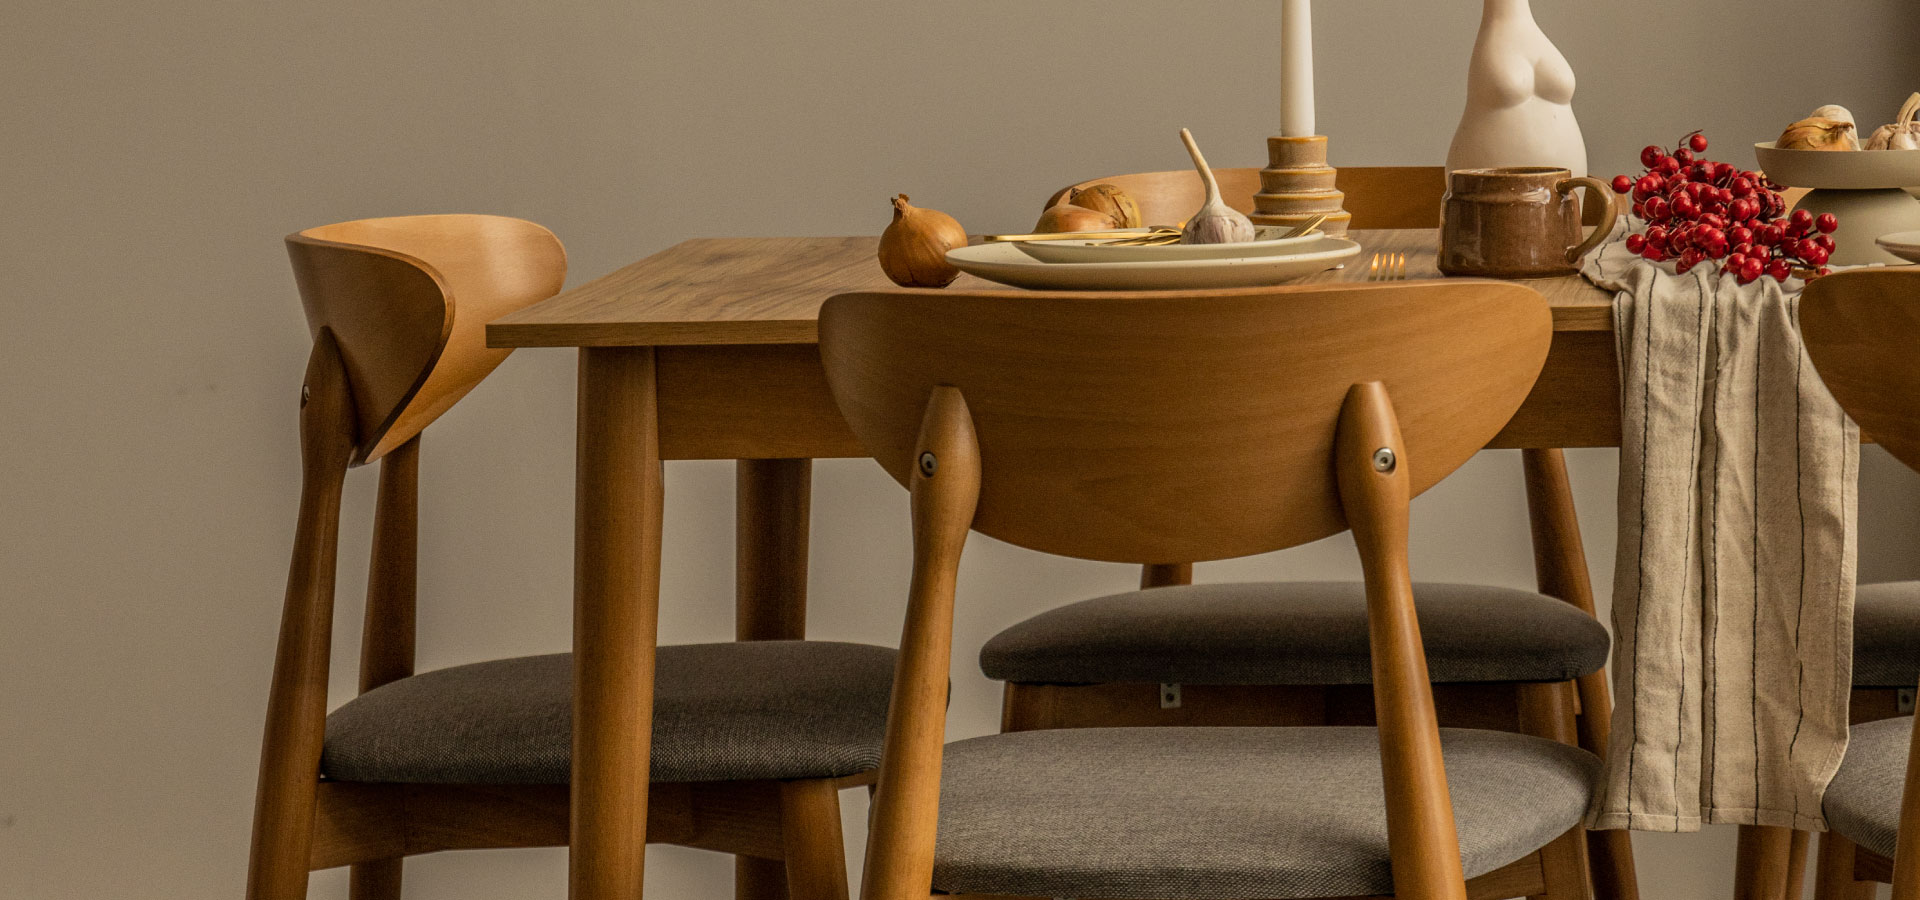 Drewniany stół oraz krzesła w jadalni. Krzesła z zaokrąglonym oparciem oraz tapicerowanym, szarym siedziskiem. Na stole ustawione naczynia, wazon oraz świeczka.